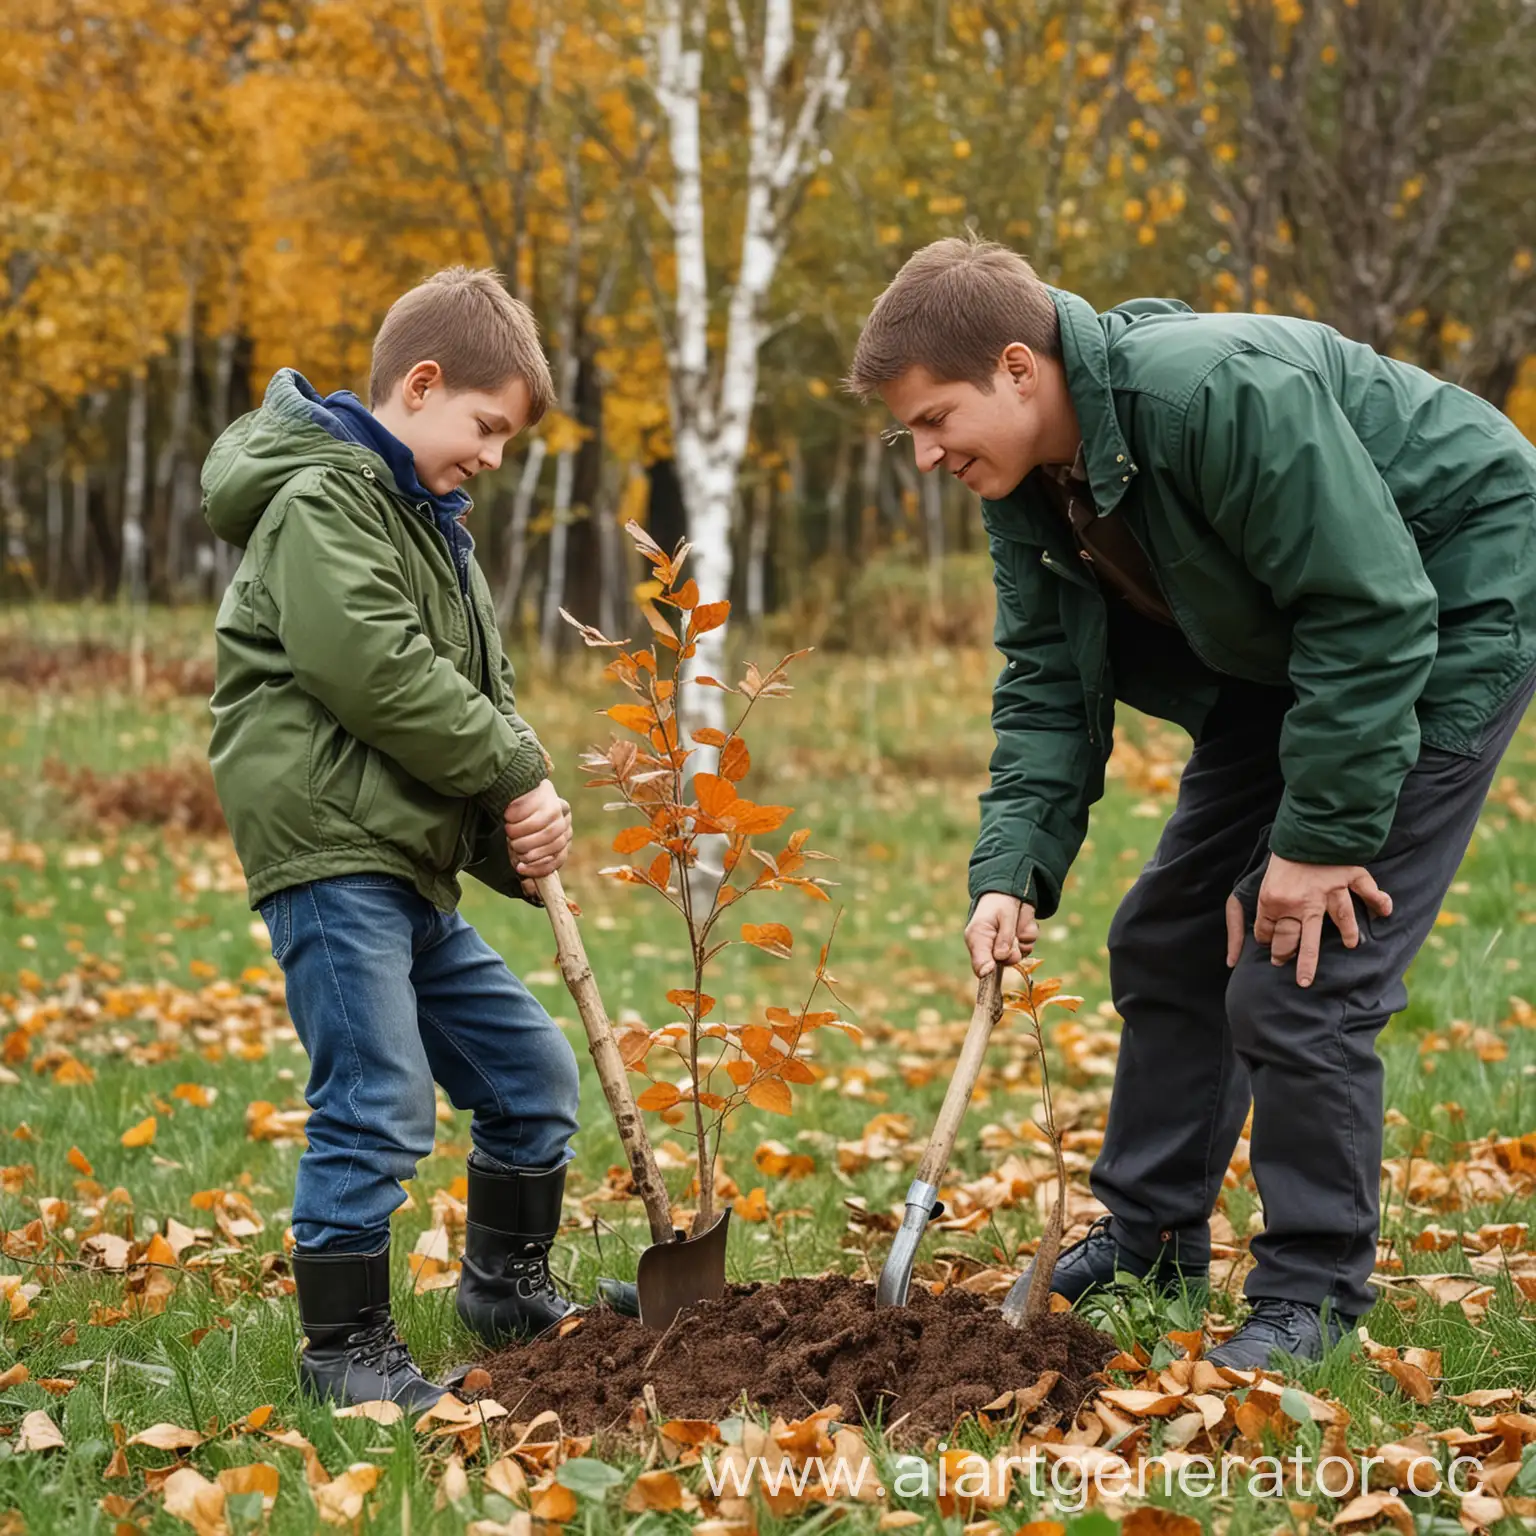 Реальная фотография. Осень. Папа и мальчик сажают дерево в парке. Помогают природе. Папе 37 лет. Он держит лопату. Мальчику 11 лет. Он держит саженец берёзы. На мальчике зеленая куртка. На папе коричневая куртка. На заднем плане другие люди. Они тоже сажают деревья и кусты.